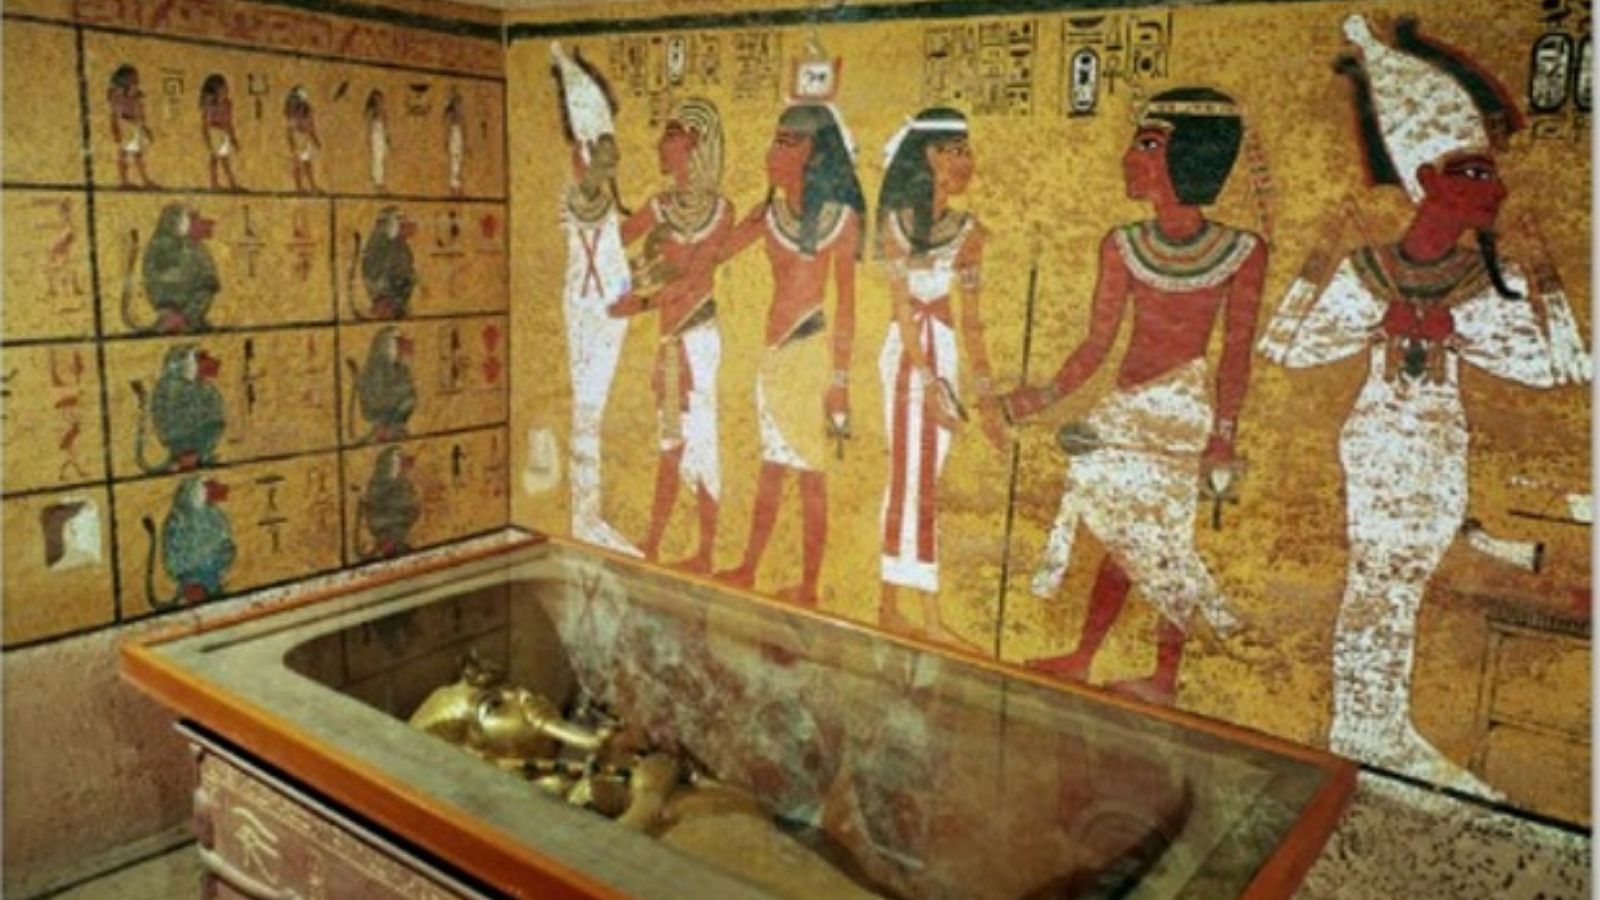 Trovato qualcosa di UNICO in una tomba egizia di 5000 anni fa